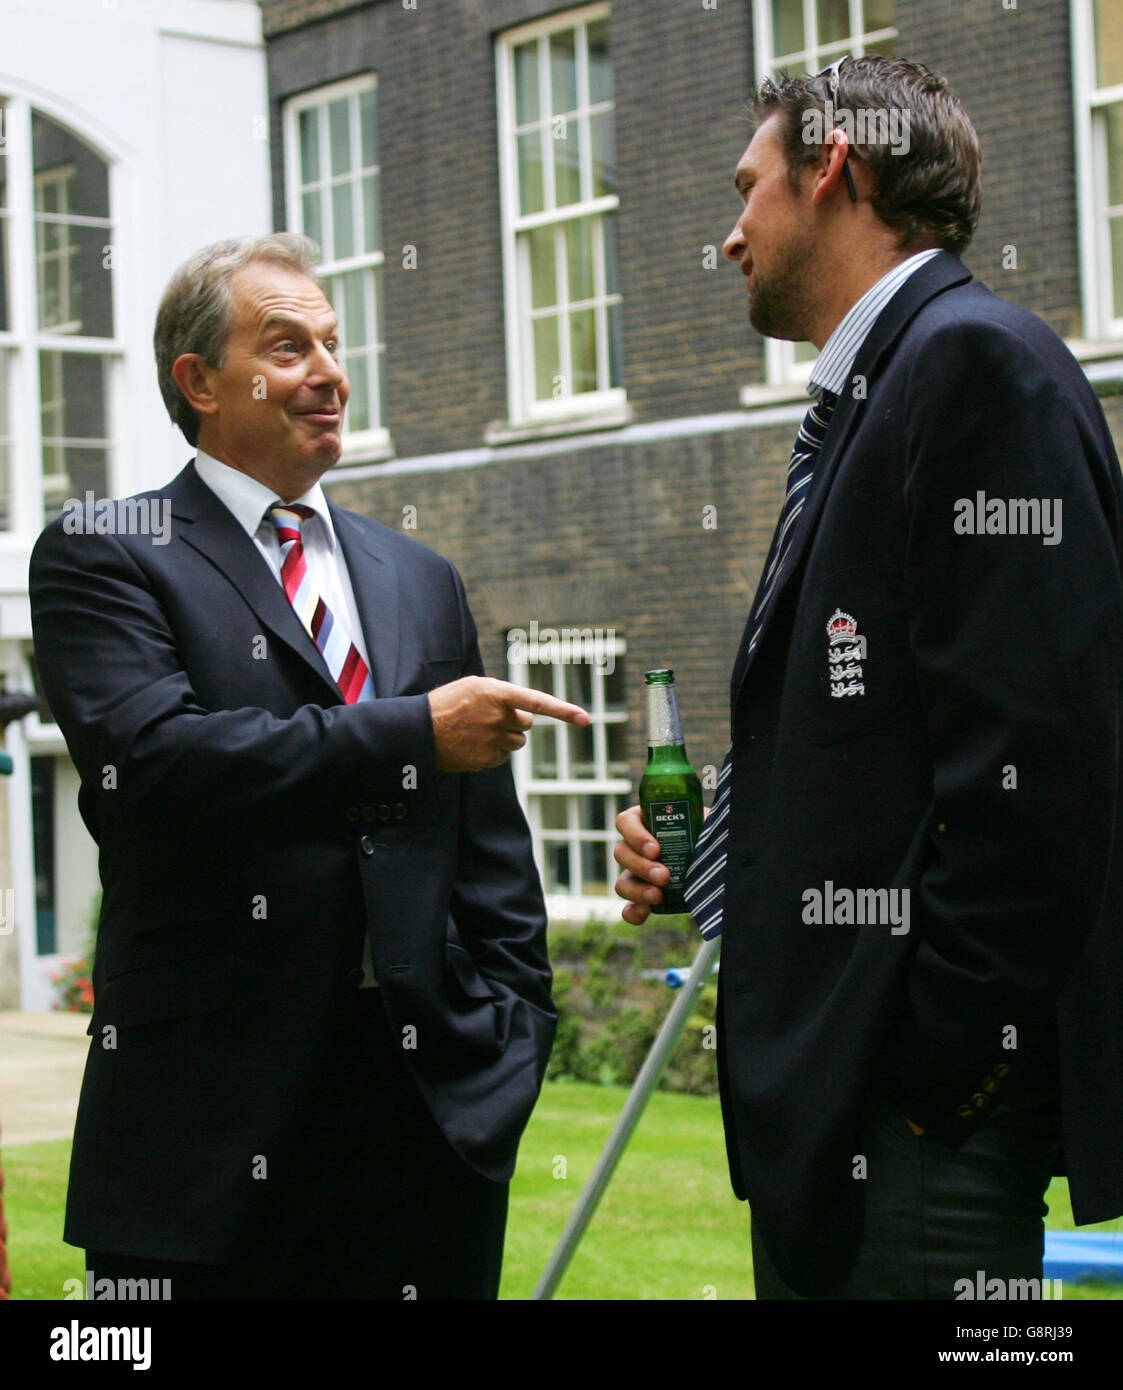 Der britische Premierminister Tony Blair spricht am Dienstag, dem 13. September 2005, mit Engand-Cricketspieler Steve Harmion während eines Empfangs in der Downing Street im Zentrum von London zu Ehren des englischen Cricket-Teams, das Australien in einer Serie mit fünf Spielen besiegte, um die Asche zurückzugewinnen. Zehntausende englische Cricket-Fans säumten heute die Straßen Londons, um ihrem Team zu gratulieren, nachdem Englands erste Ashes fast zwei Jahrzehnte lang über Australien triumphiert hatte. Siehe PA Story SPORT Ashes. DRÜCKEN SIE VERBANDSFOTO. Das Foto sollte lauten: Mike Finn-Kelcey/PA/WPA Pool/Reuters Stockfoto